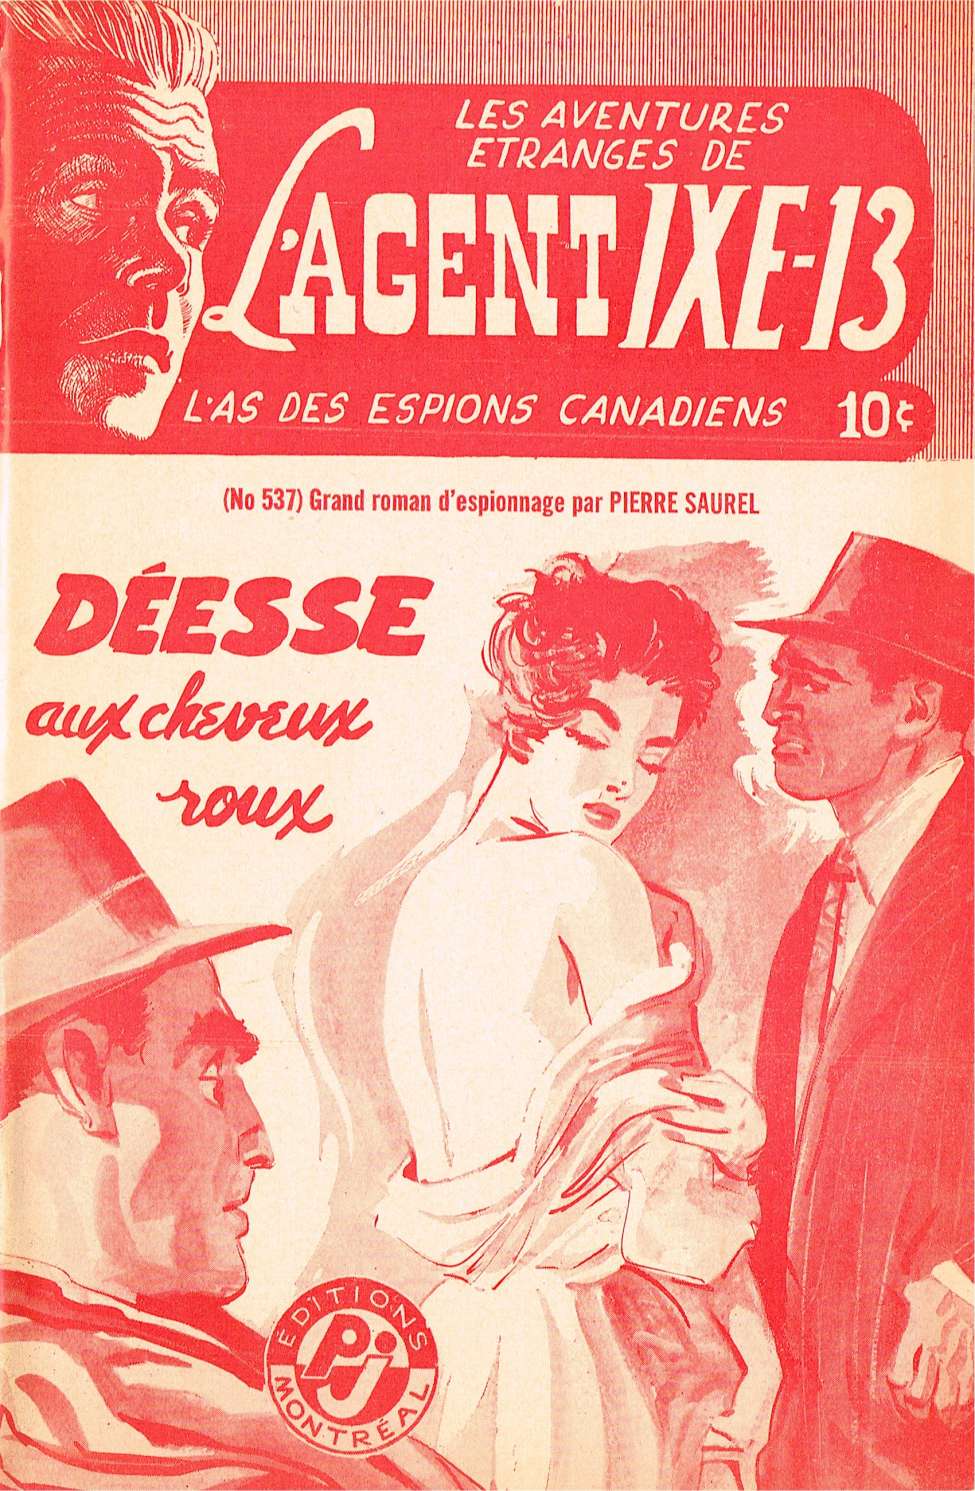 Book Cover For L'Agent IXE-13 v2 537 - Déesse aux cheveux roux